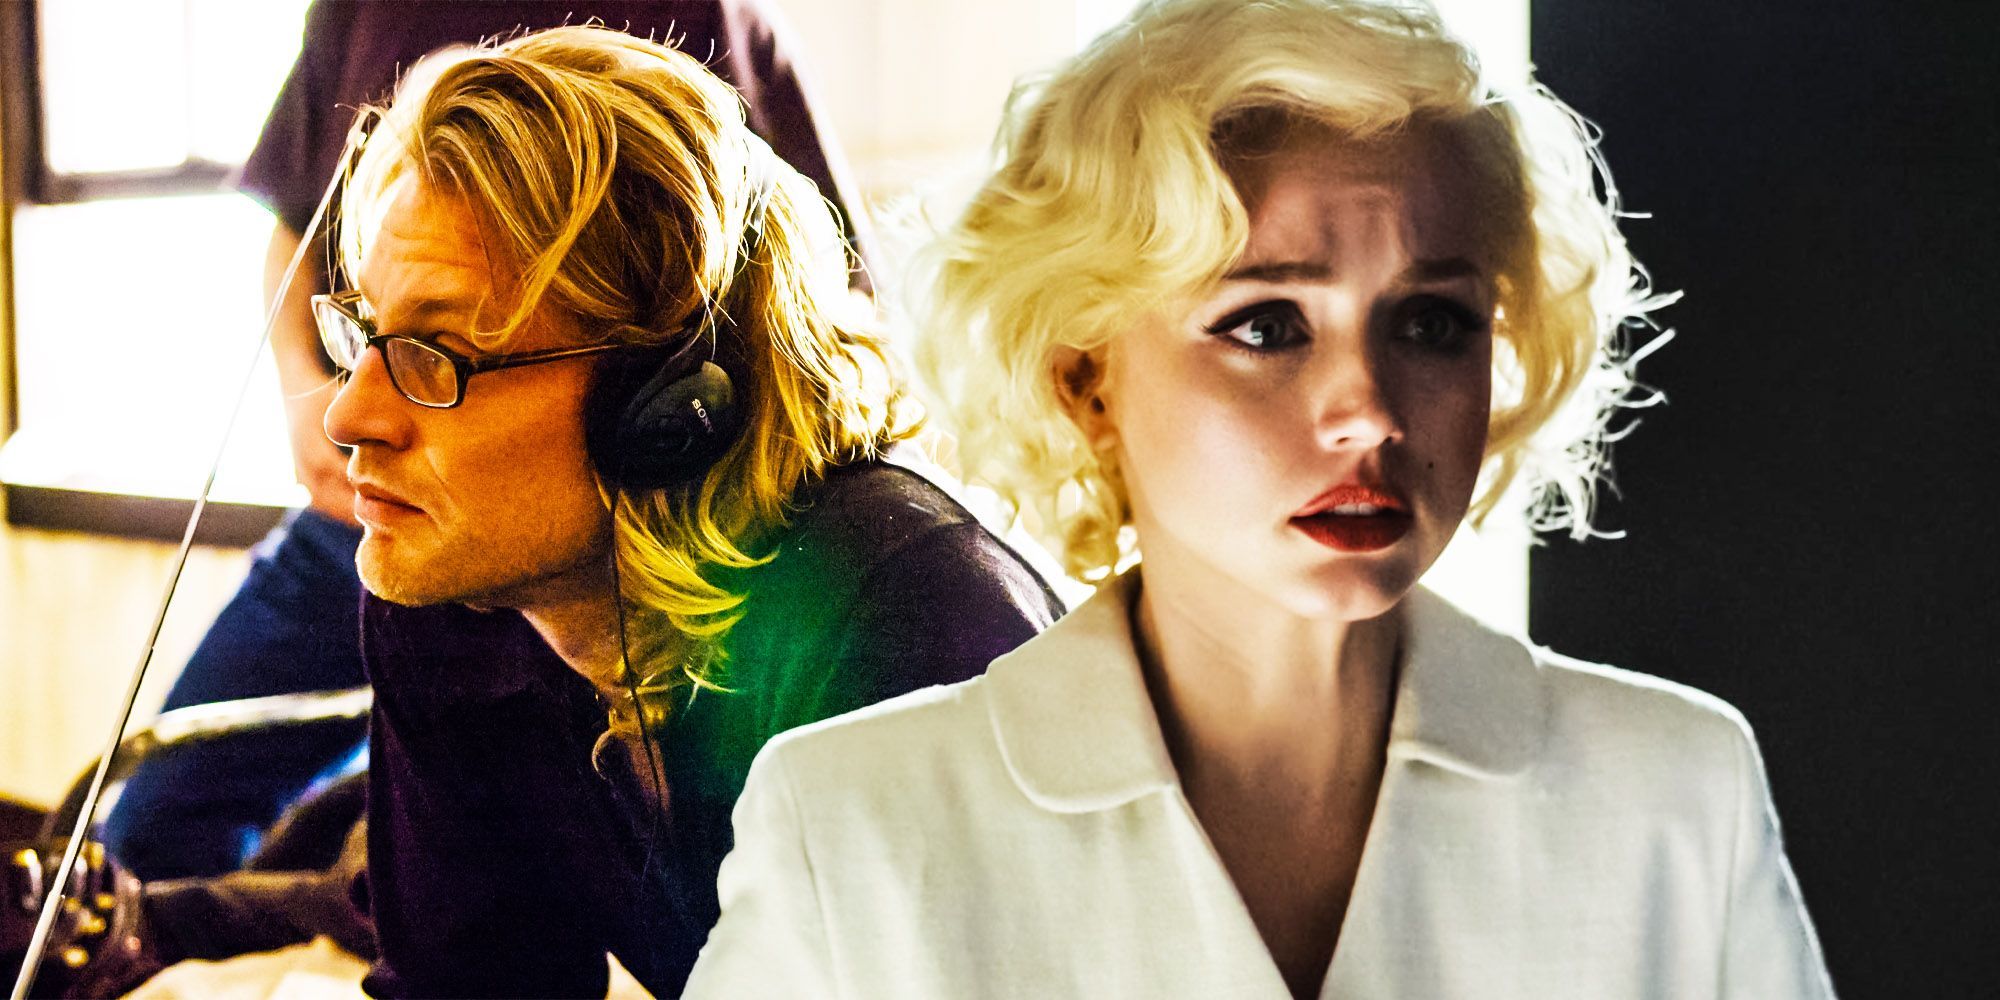 The blonde bombshell returns: Andrew Dominik's take on Marilyn Monroe -  arts24